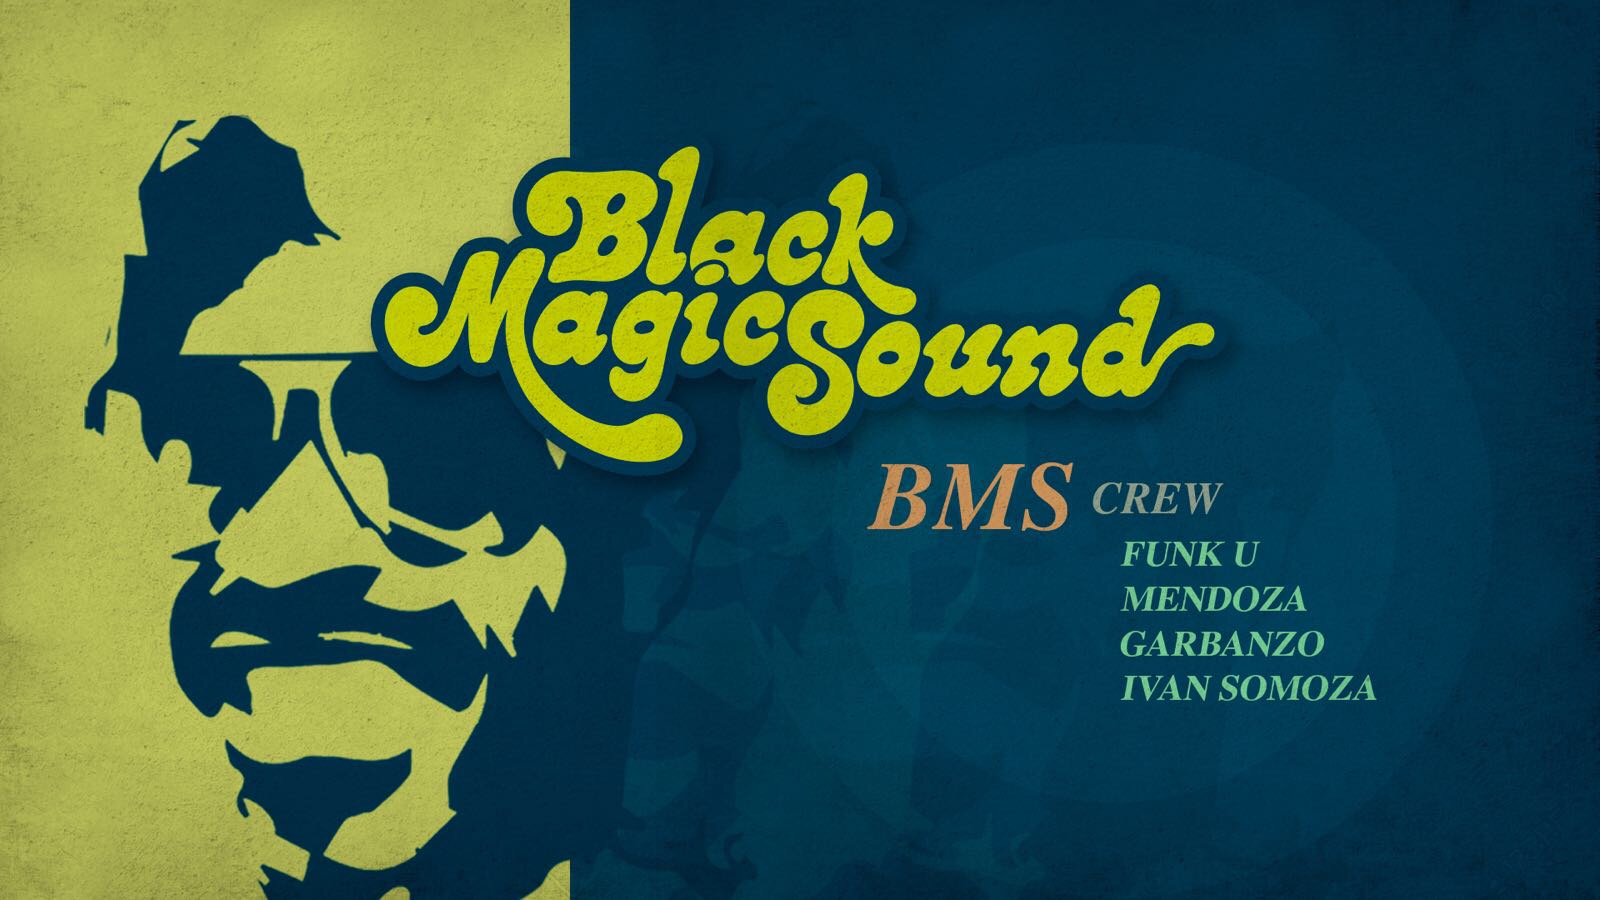 20 Canciones para descubrir el Black Magic Sound, por BMS!